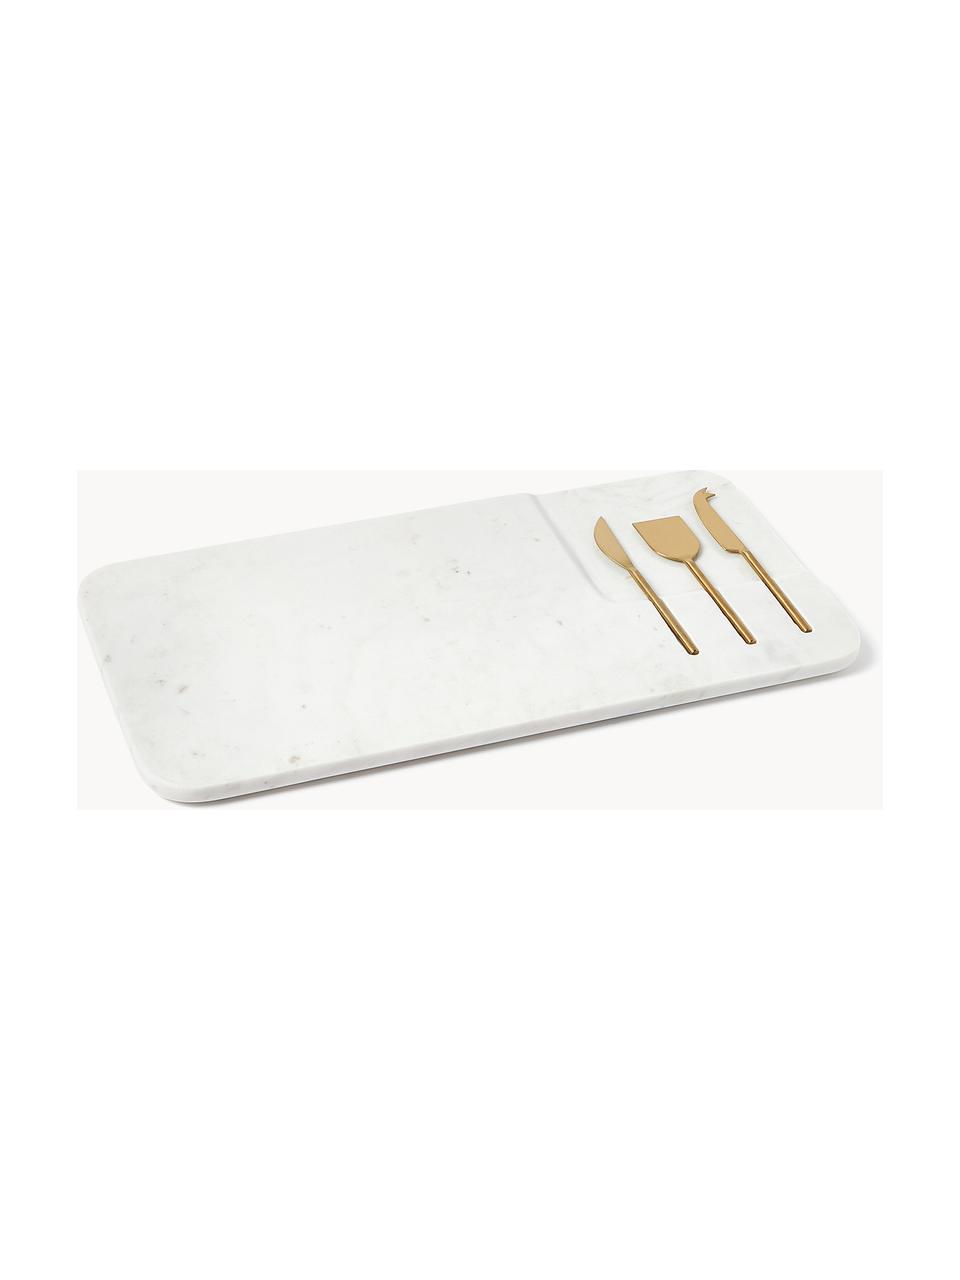 Servierplatte Jaya mit Käsemessern, 4er-Set, Messer: Metall, Weiß marmoriert, Goldfarben, B 48 x T 22 cm